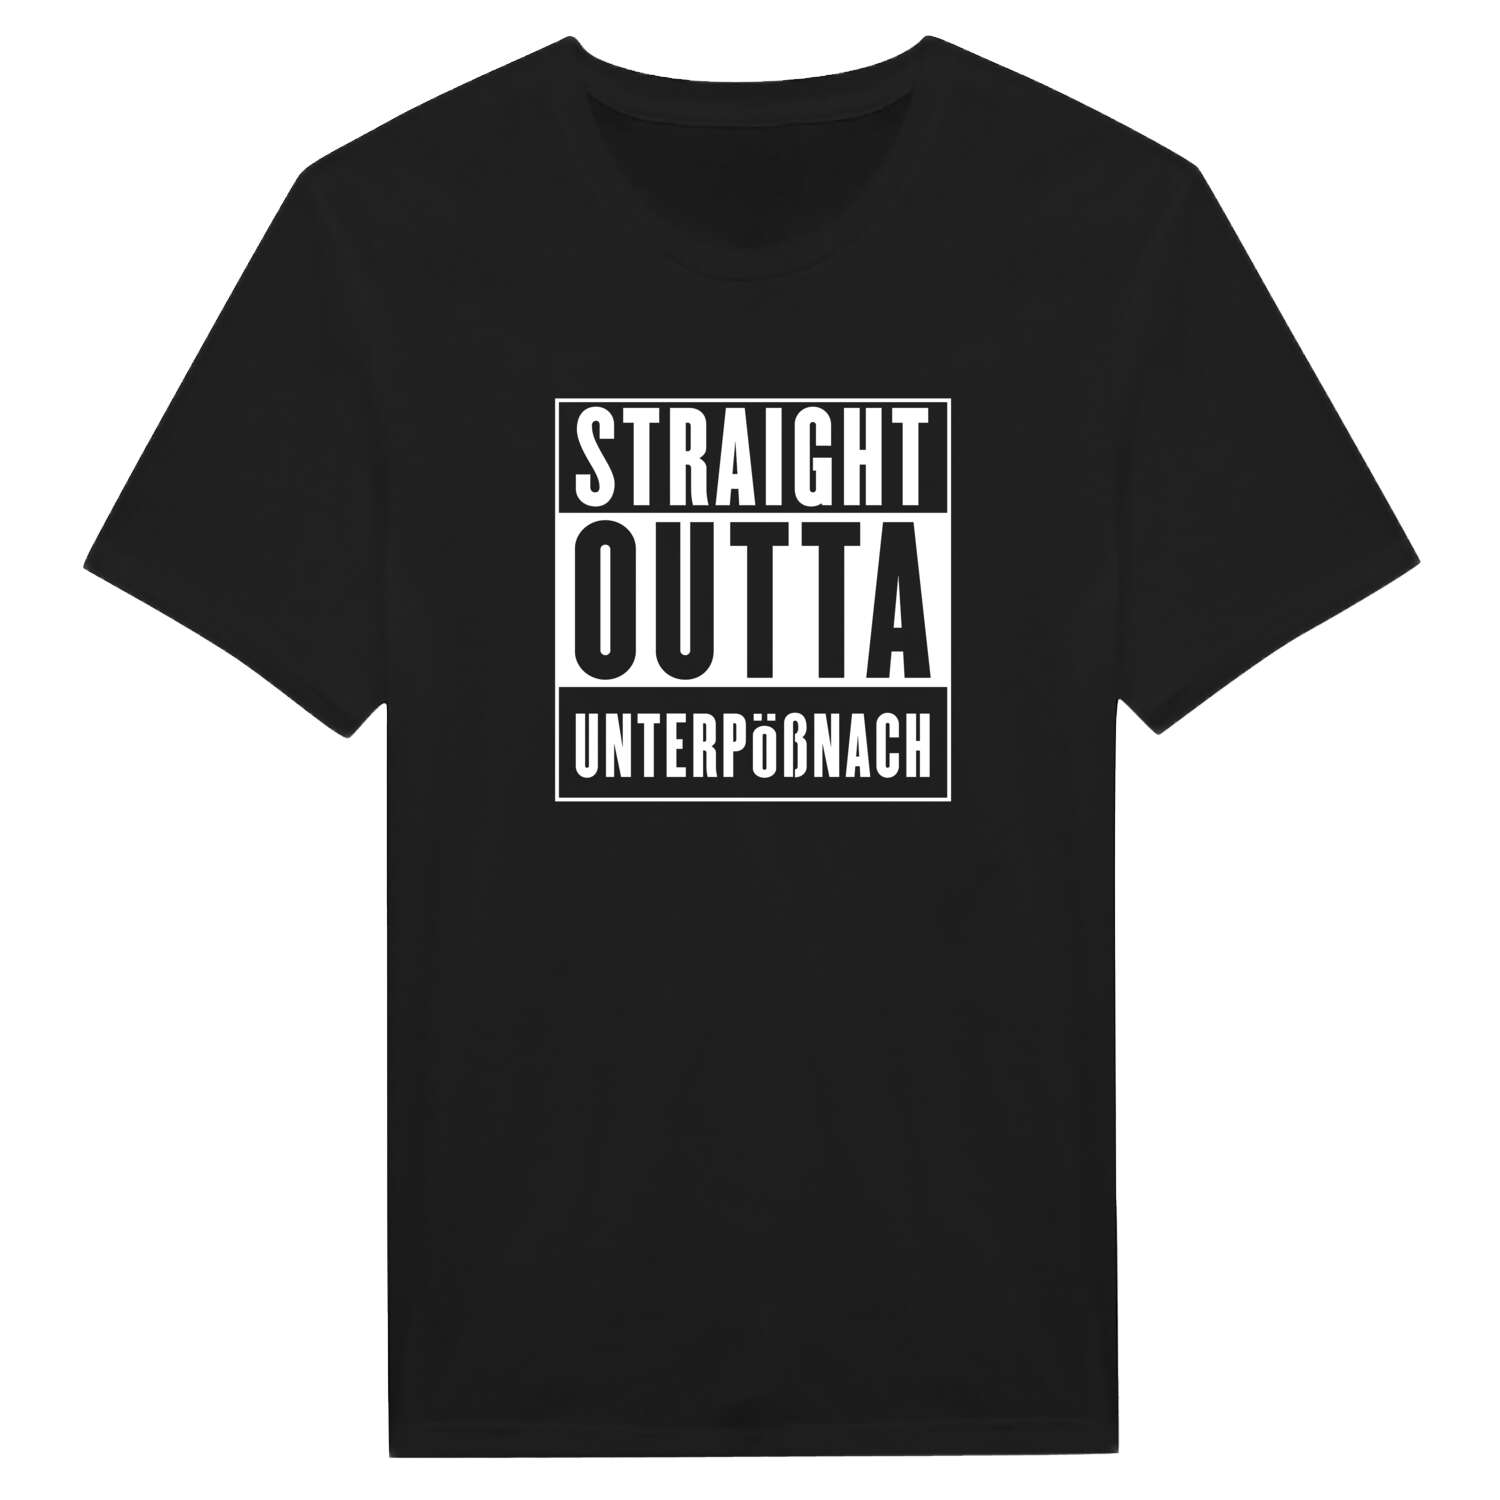 Unterpößnach T-Shirt »Straight Outta«